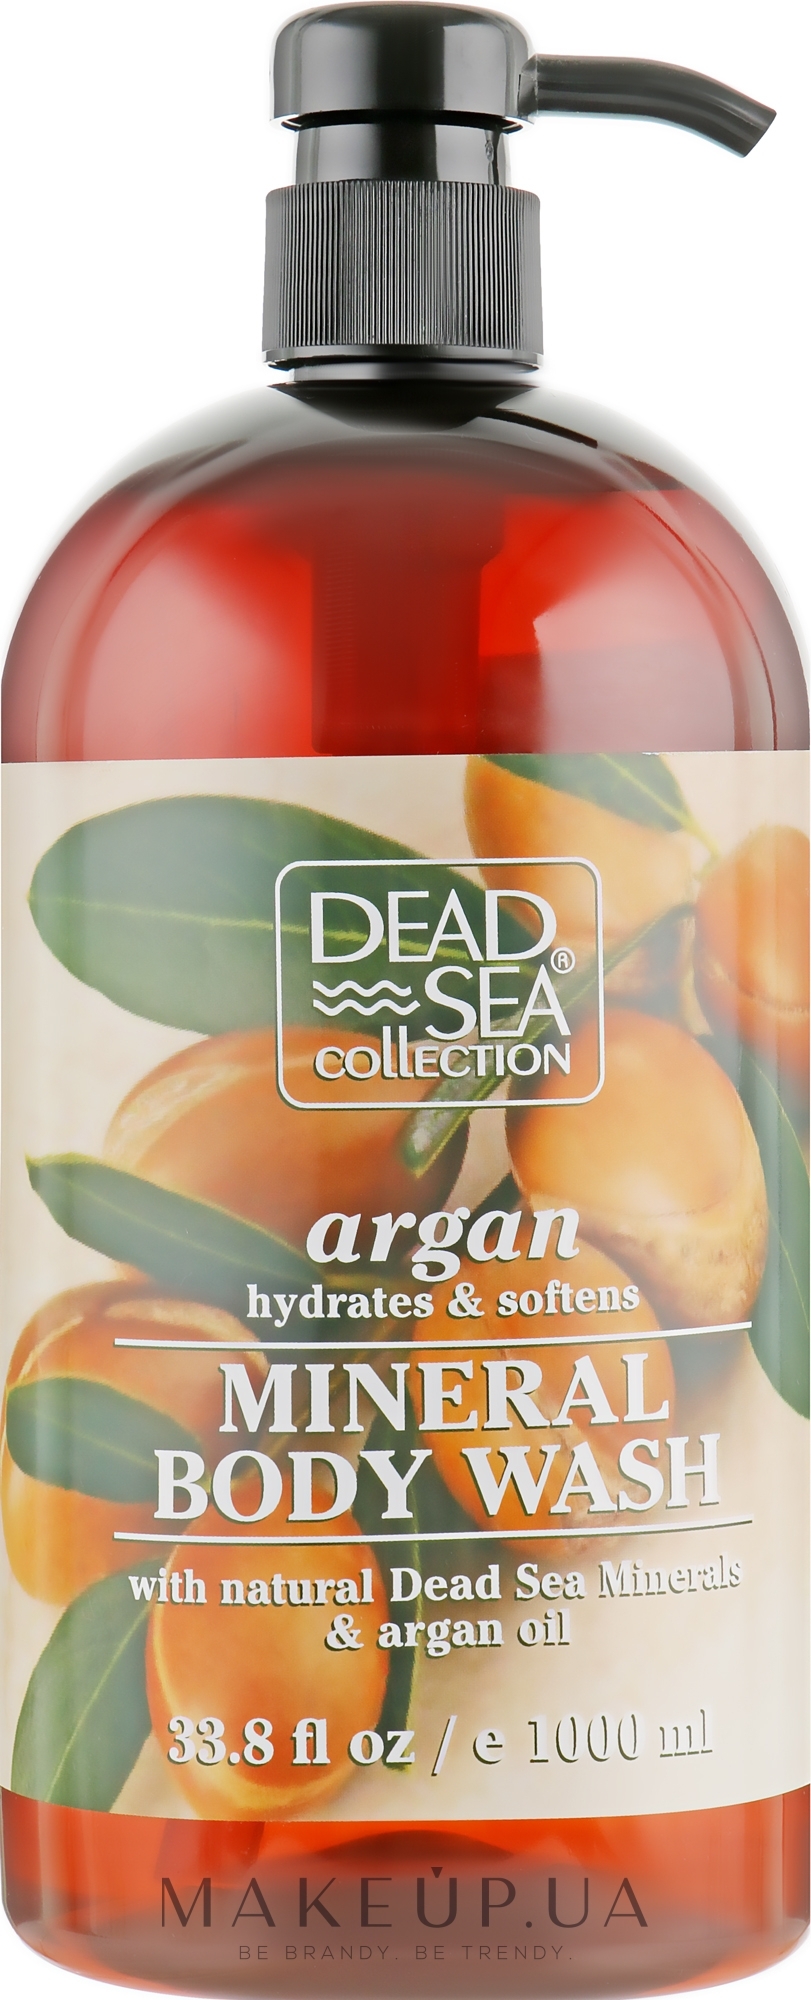 Гель для душа с минералами Мертвого моря и аргановым маслом - Dead Sea Collection Argan Body Wash — фото 1000ml